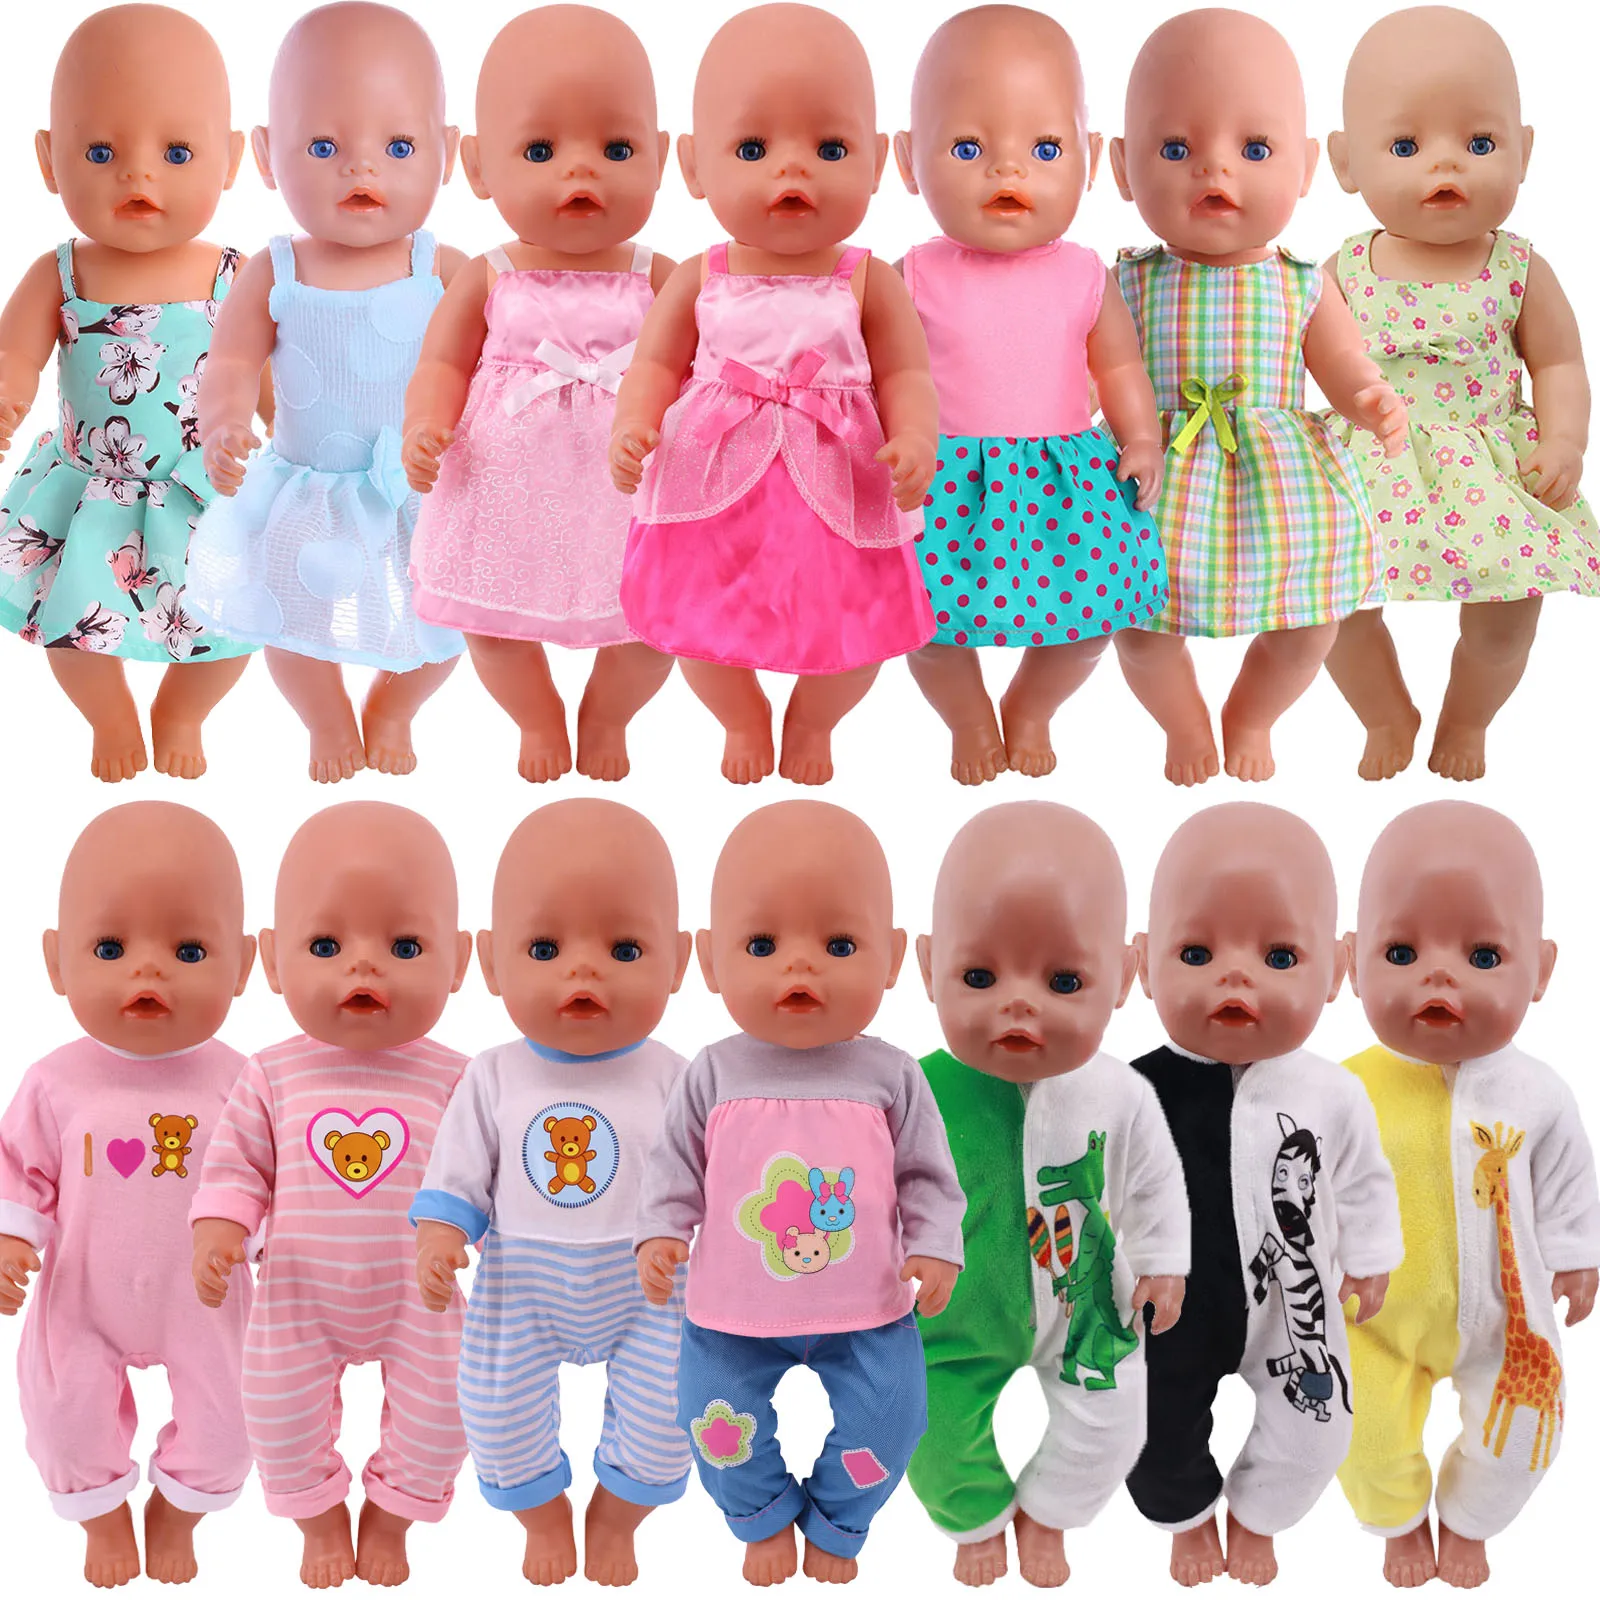 Кукольная одежда, платье, юбка, мультяшный кролик, раньше, для 18-дюймовых американских девушек и 43 см кукол новорожденных, Куклы нашего поколения рождественская обувь для кукол блестящие замшевые ботинки для новорожденных 43 см и 18 дюймовых американских кукол для девочек подарки на д